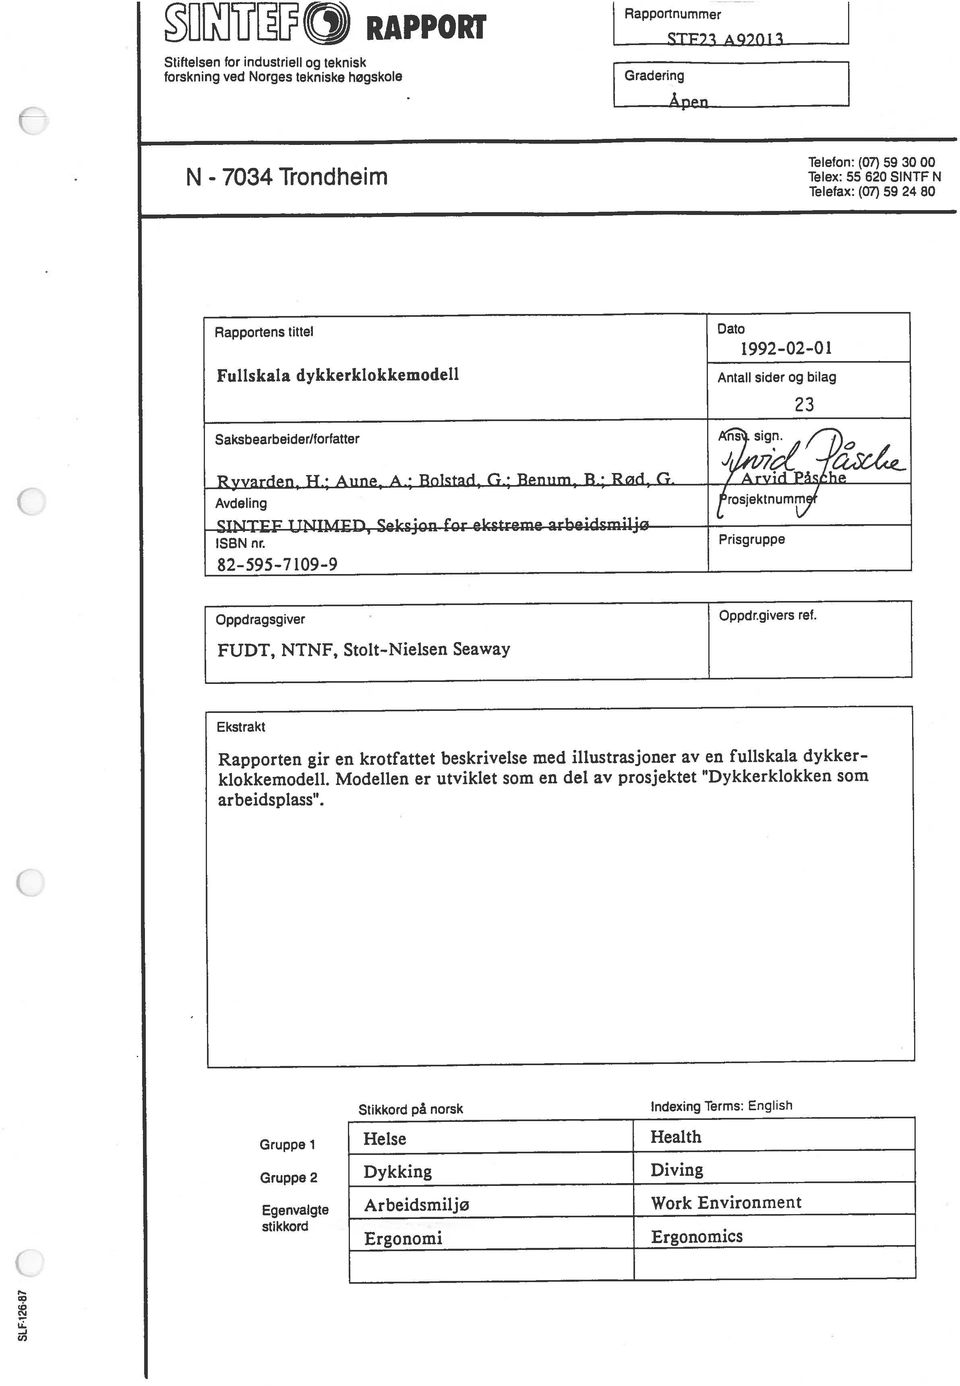 teknisk Saksbearbeider/torfatter sign Avdeling rosjektnum,l Oppdragsgiver ISBN nr. Prisgruppe SINTEF UNIMED, Seksjon for ekstreme arbeidsmiljø Ryvarden, H.; Aune, A.; Bolstad, G.